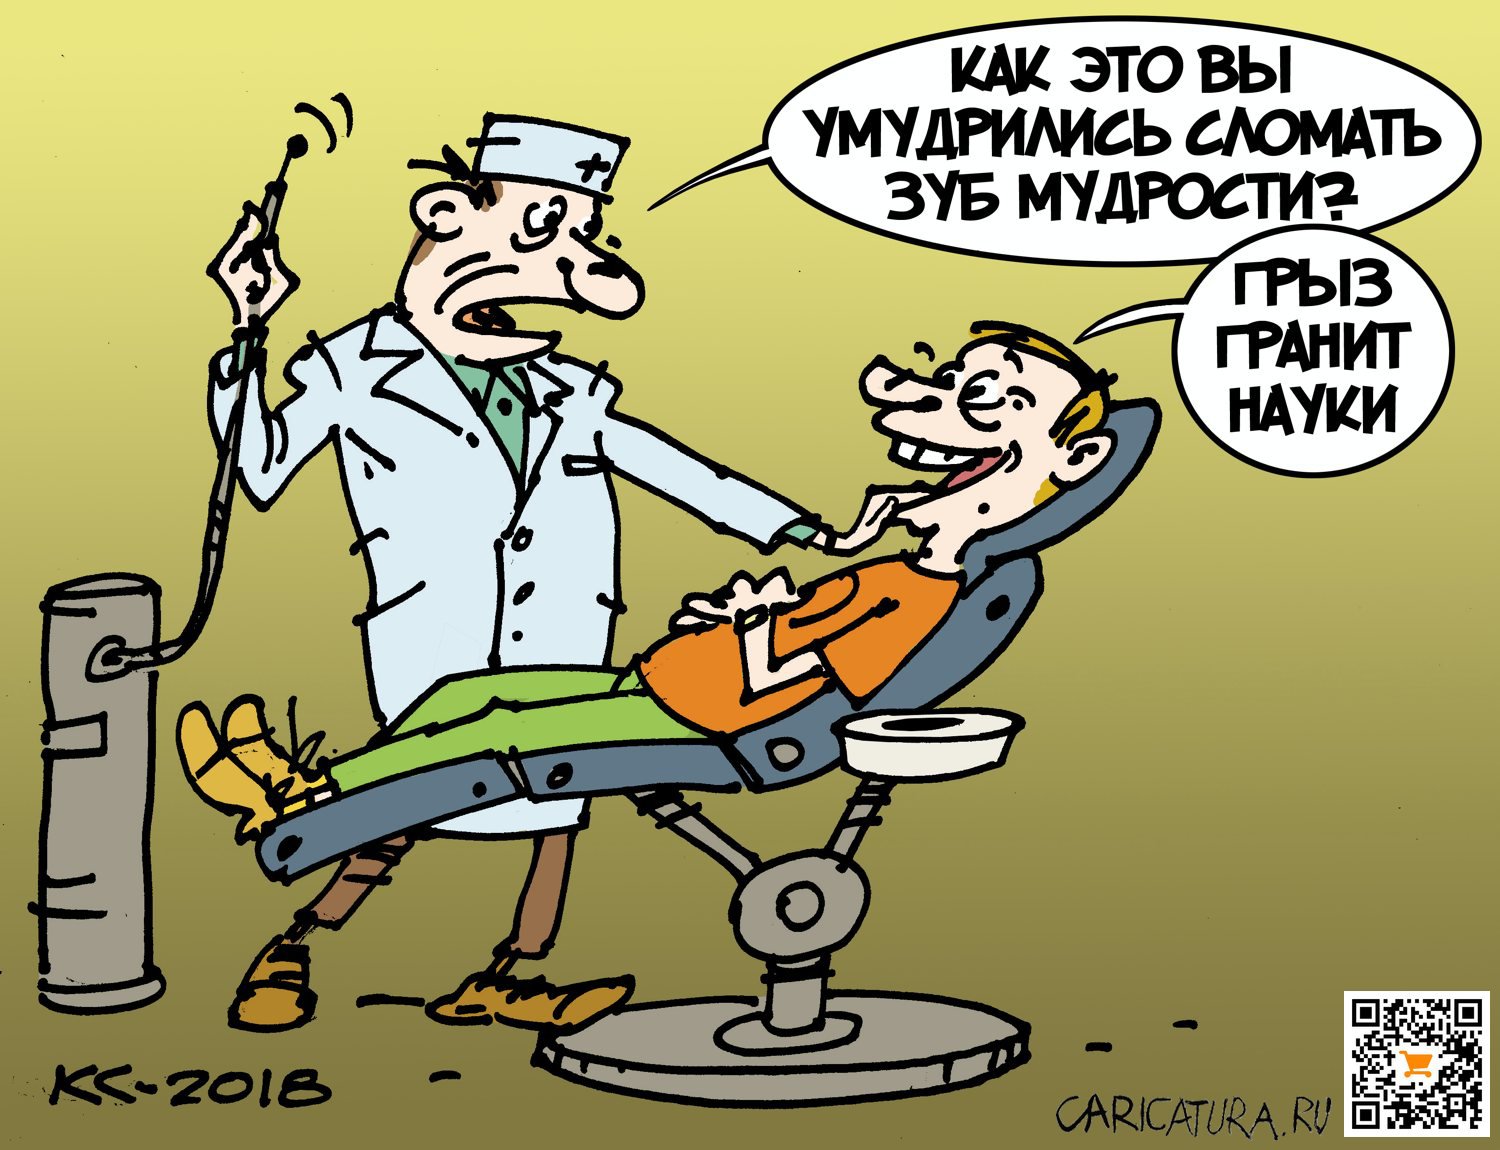 Карикатура "Гранит науки", Вячеслав Капрельянц